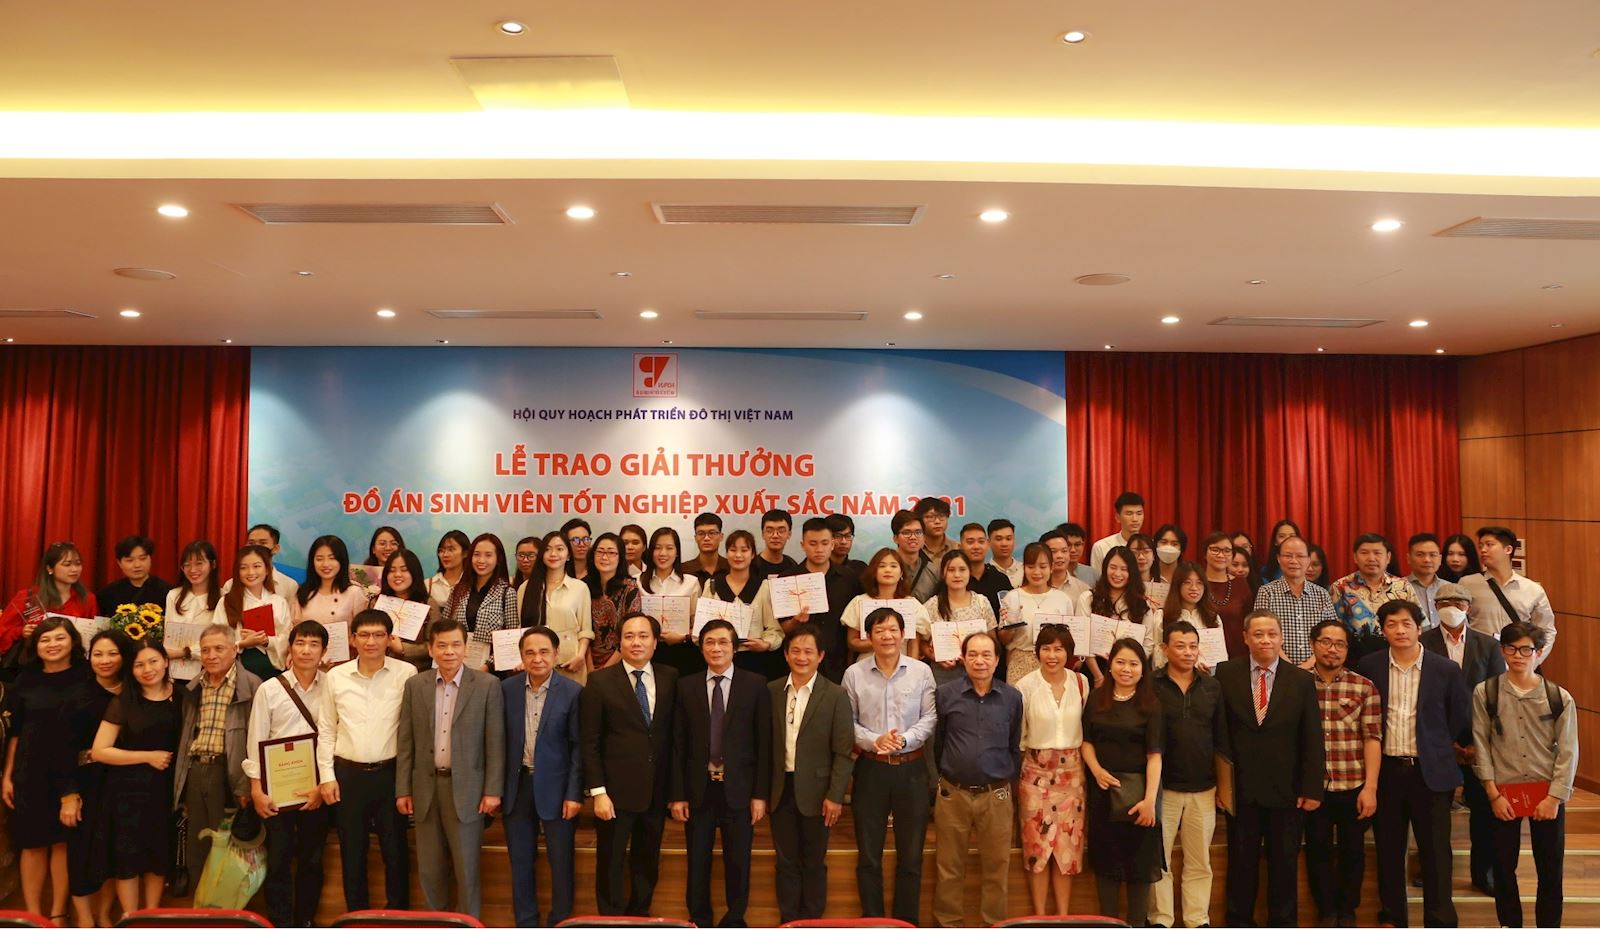 Trường Đại học Xây dựng Hà Nội đăng cai Lễ trao giải thưởng Đồ án sinh viên tốt nghiệp xuất sắc năm 2021